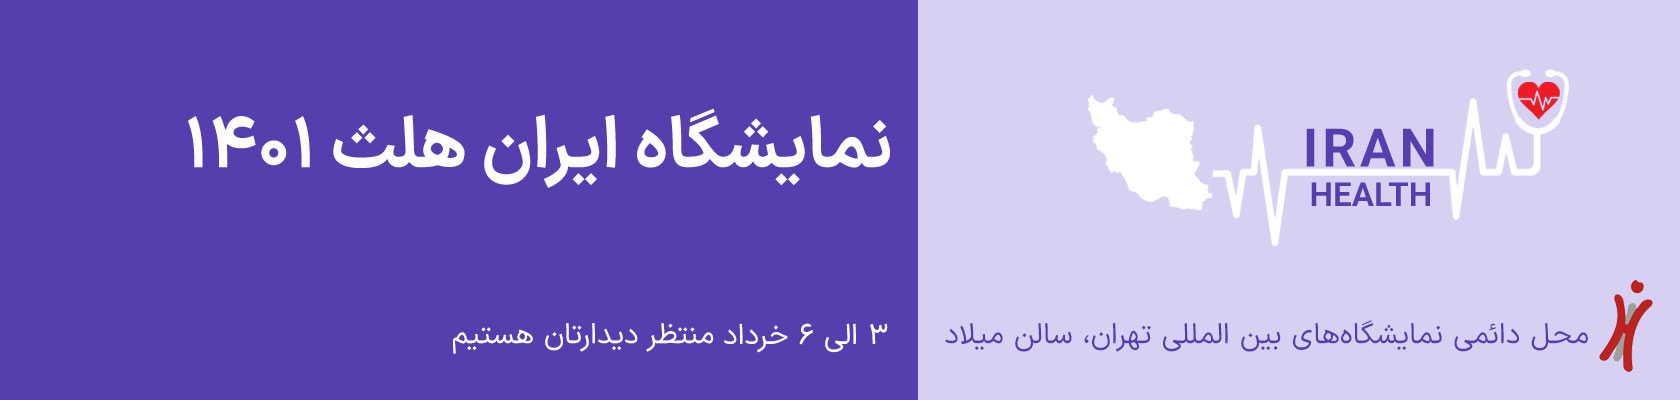 نمایشگاه ایران هلث